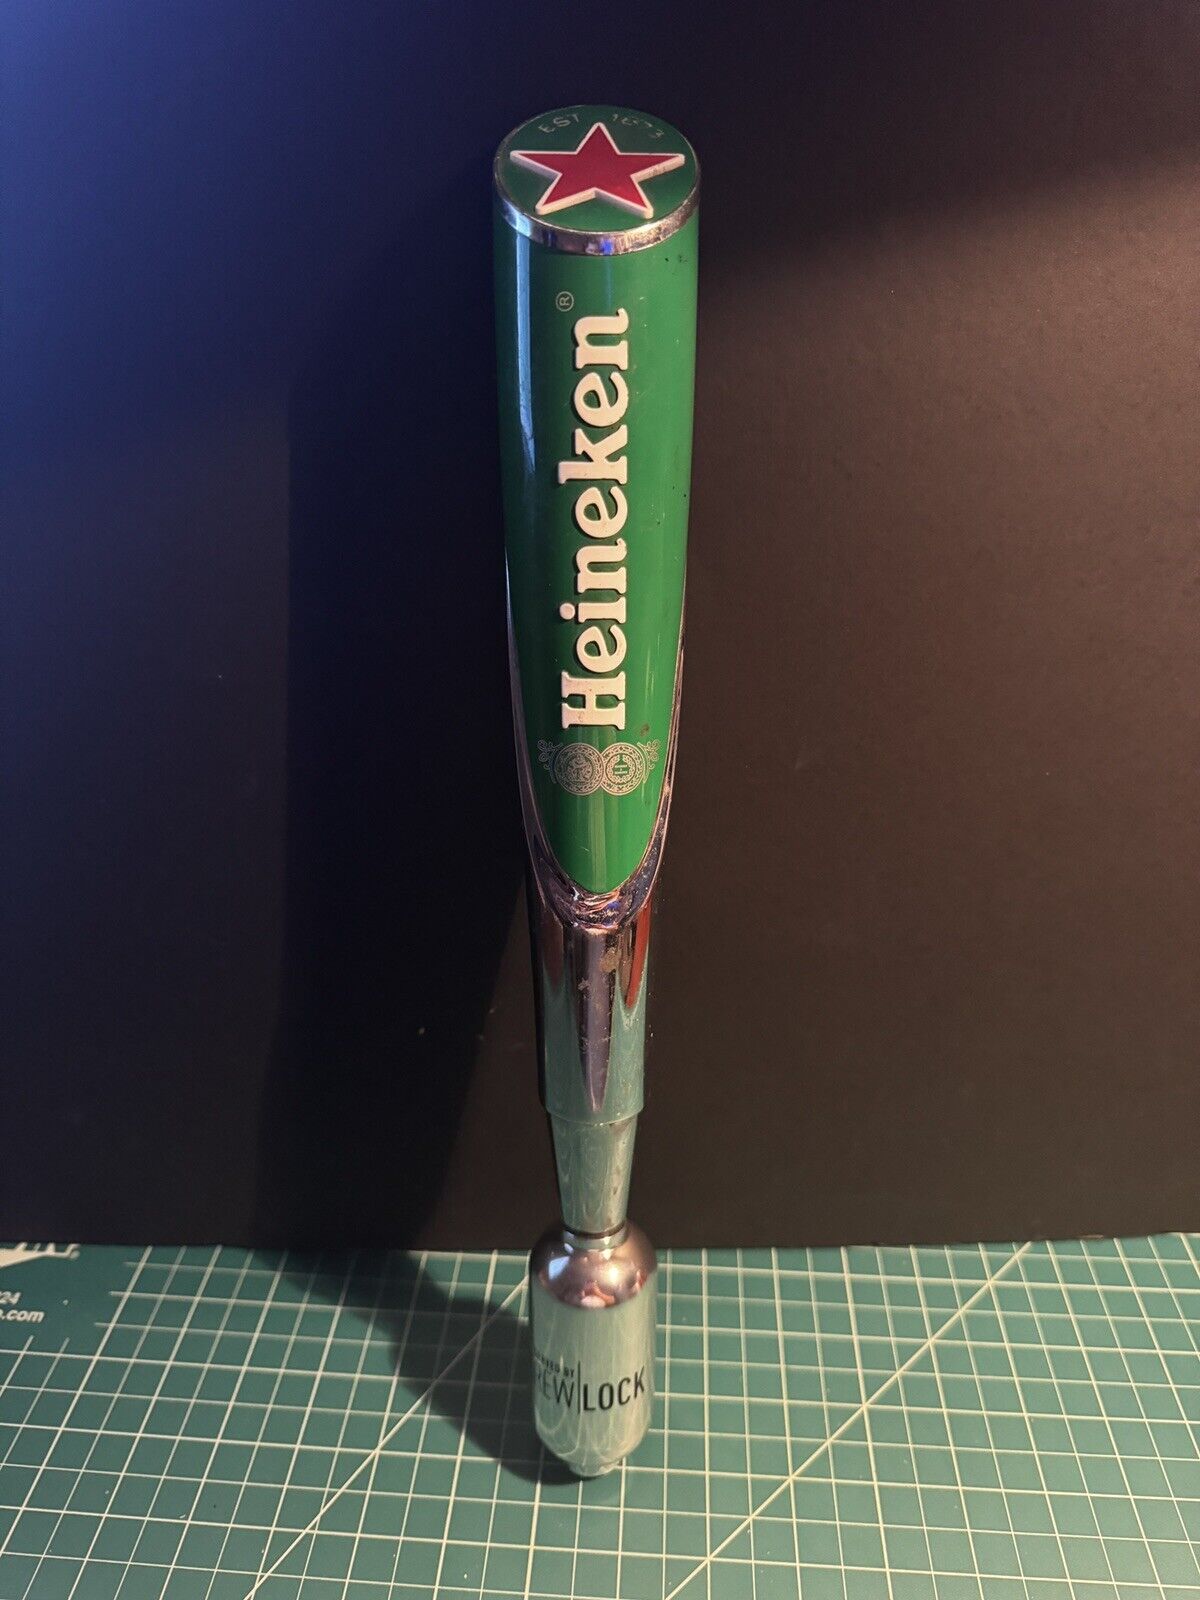 Heineken Red Star Beer Tap Handle 11.5” with Brewlock base.